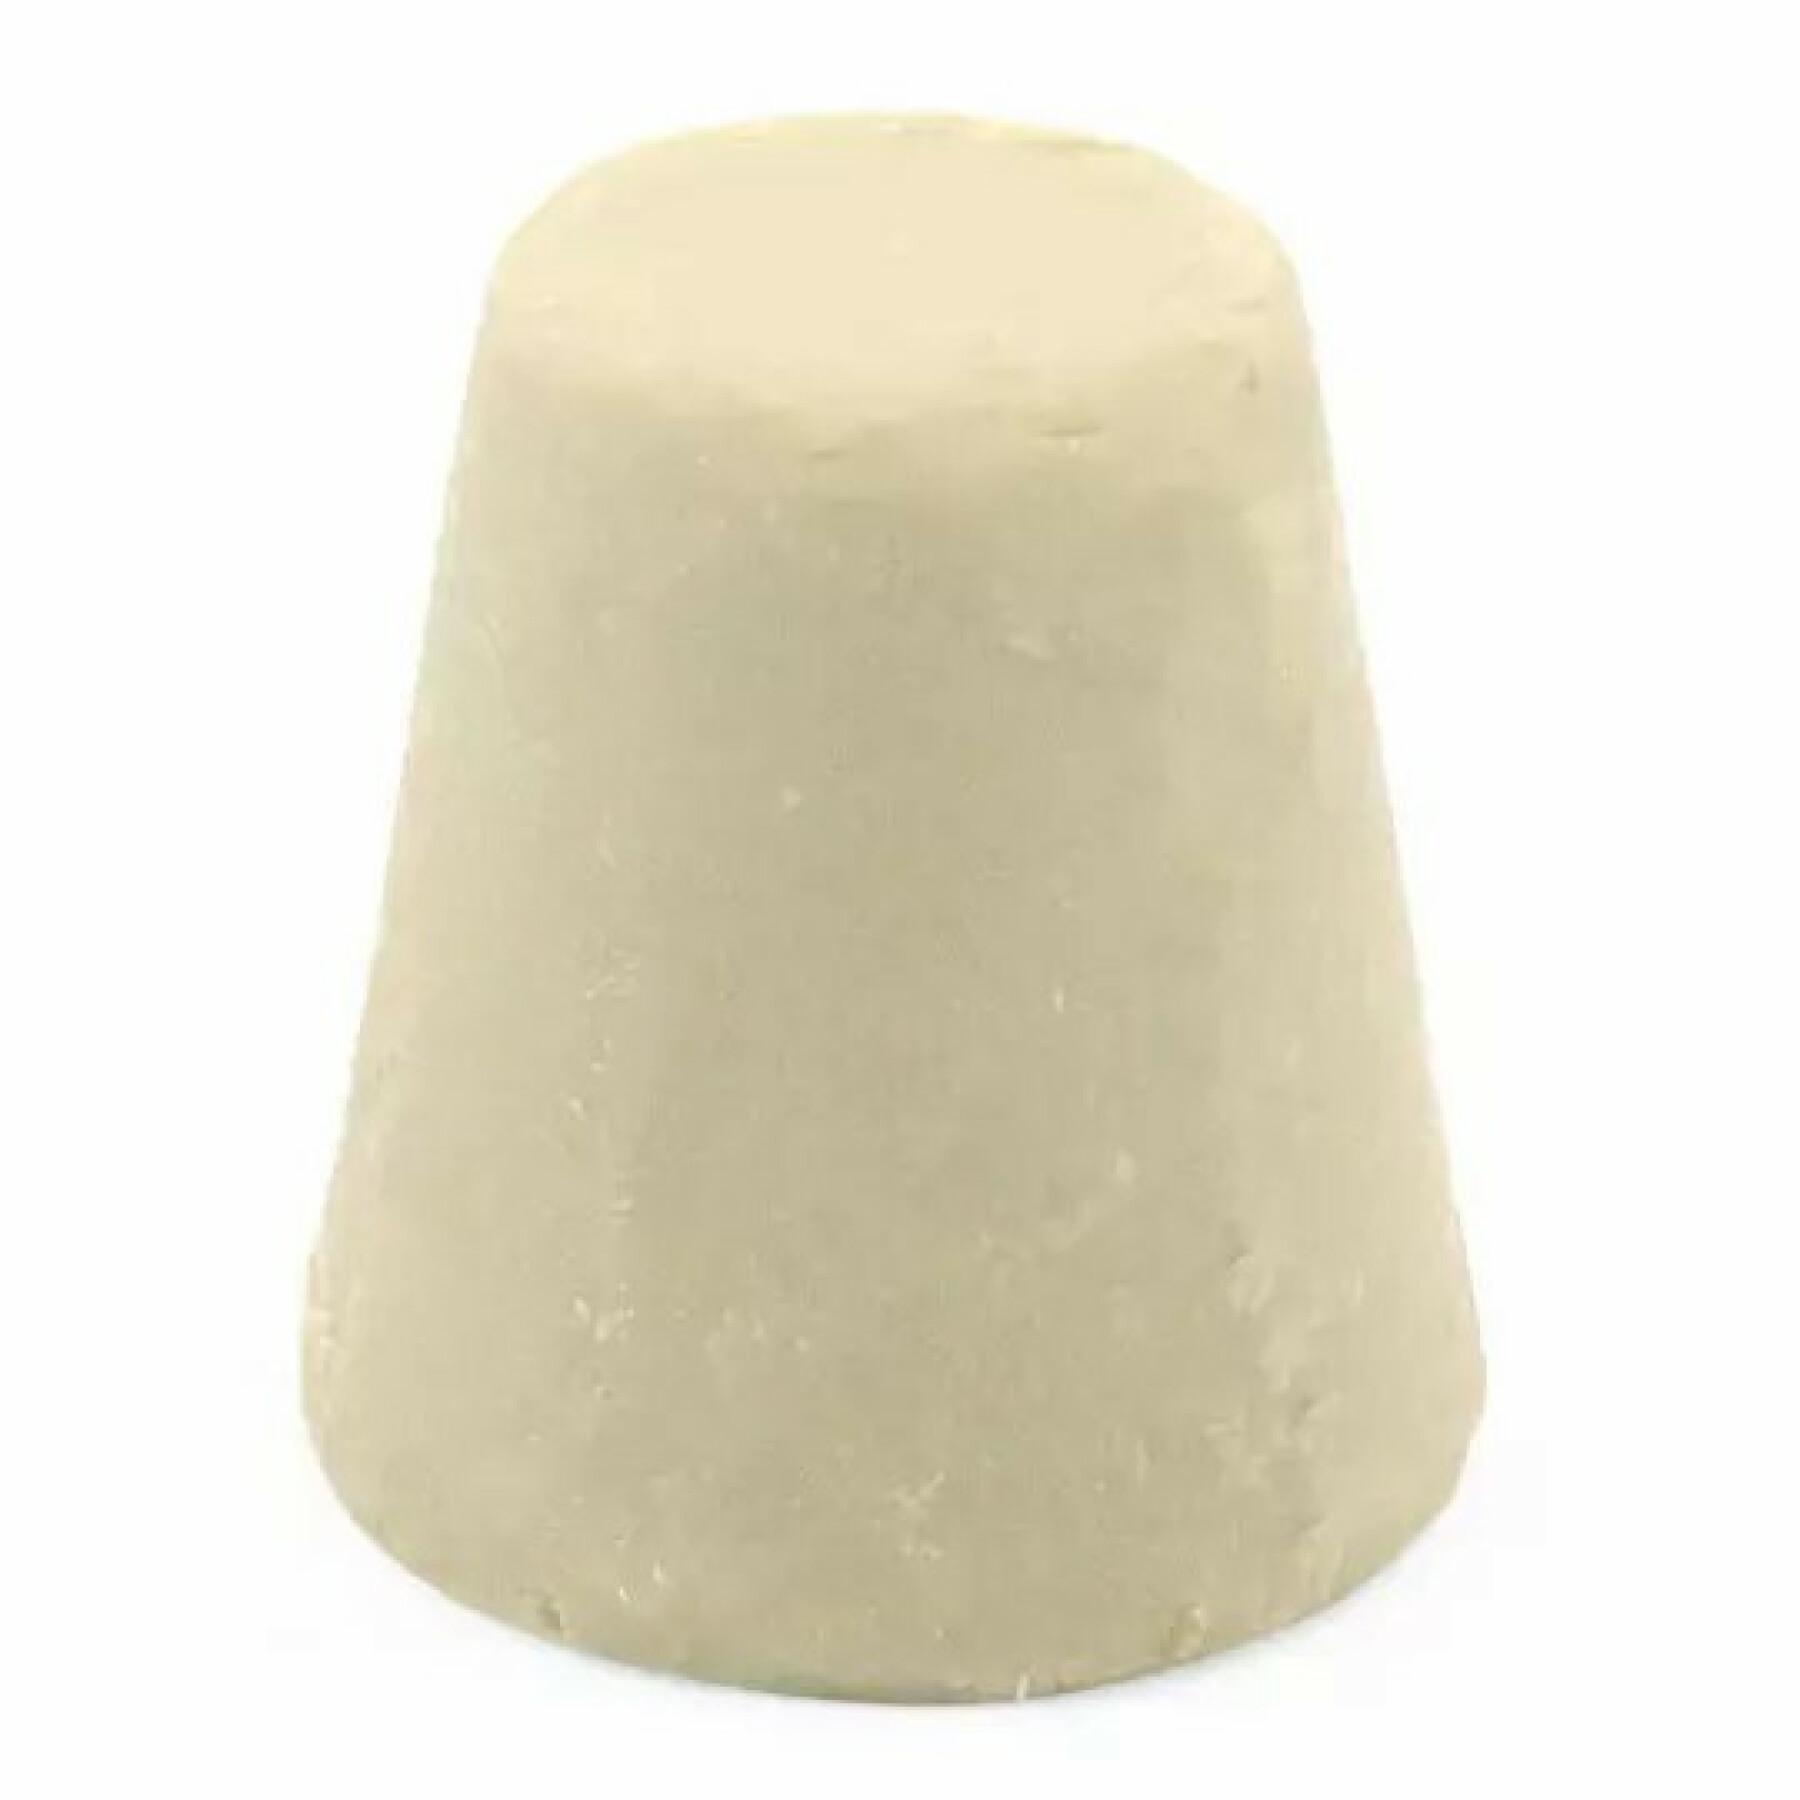 Dezodorant stały - szałwia cedr ravintsara Lamazuna (30 ml)